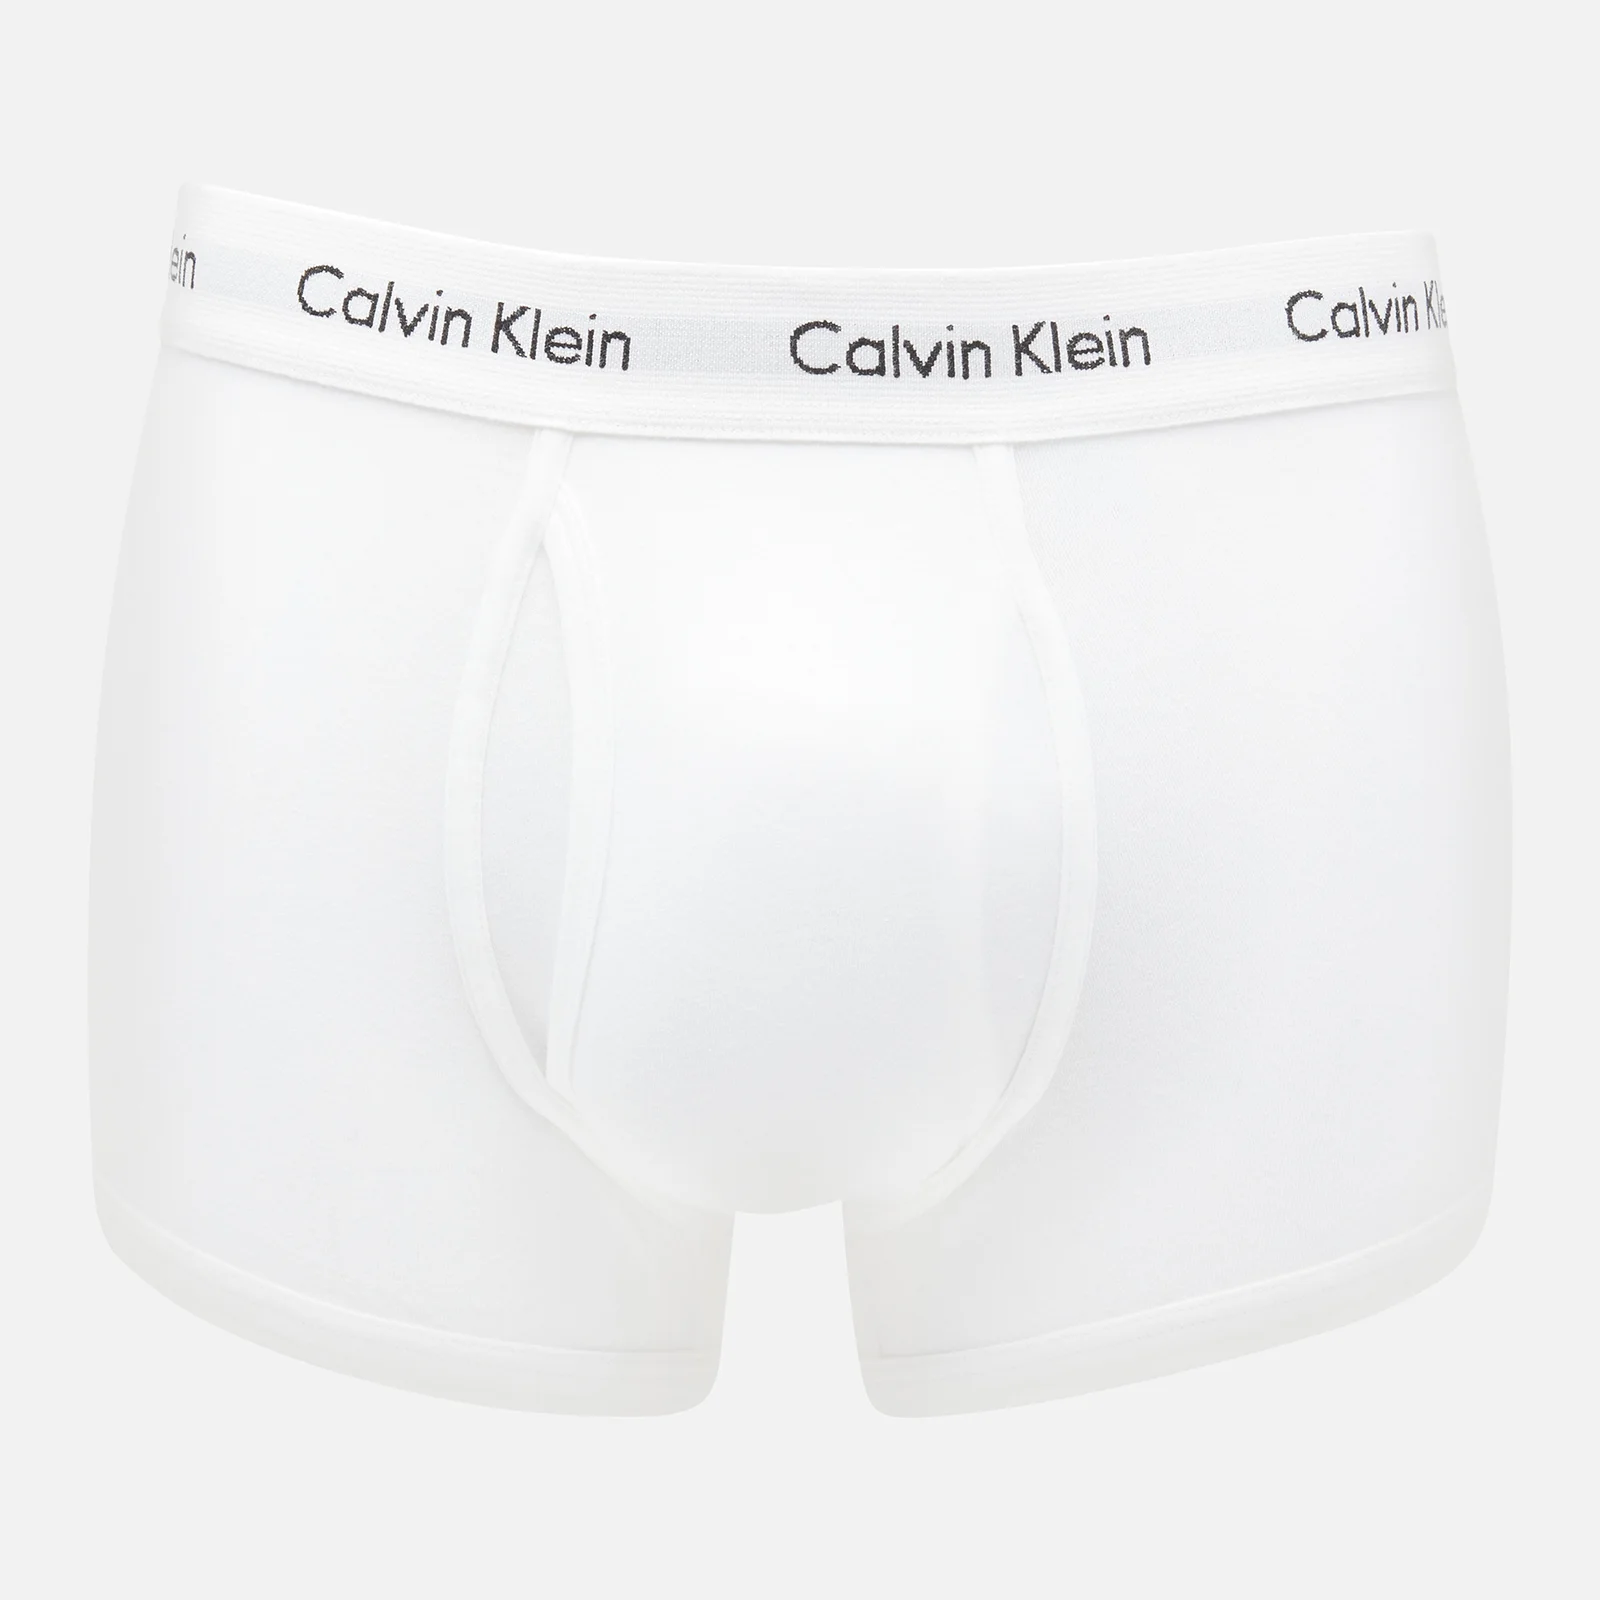 Calvin Klein Men's Modern Essentials Trunks - White Image 1